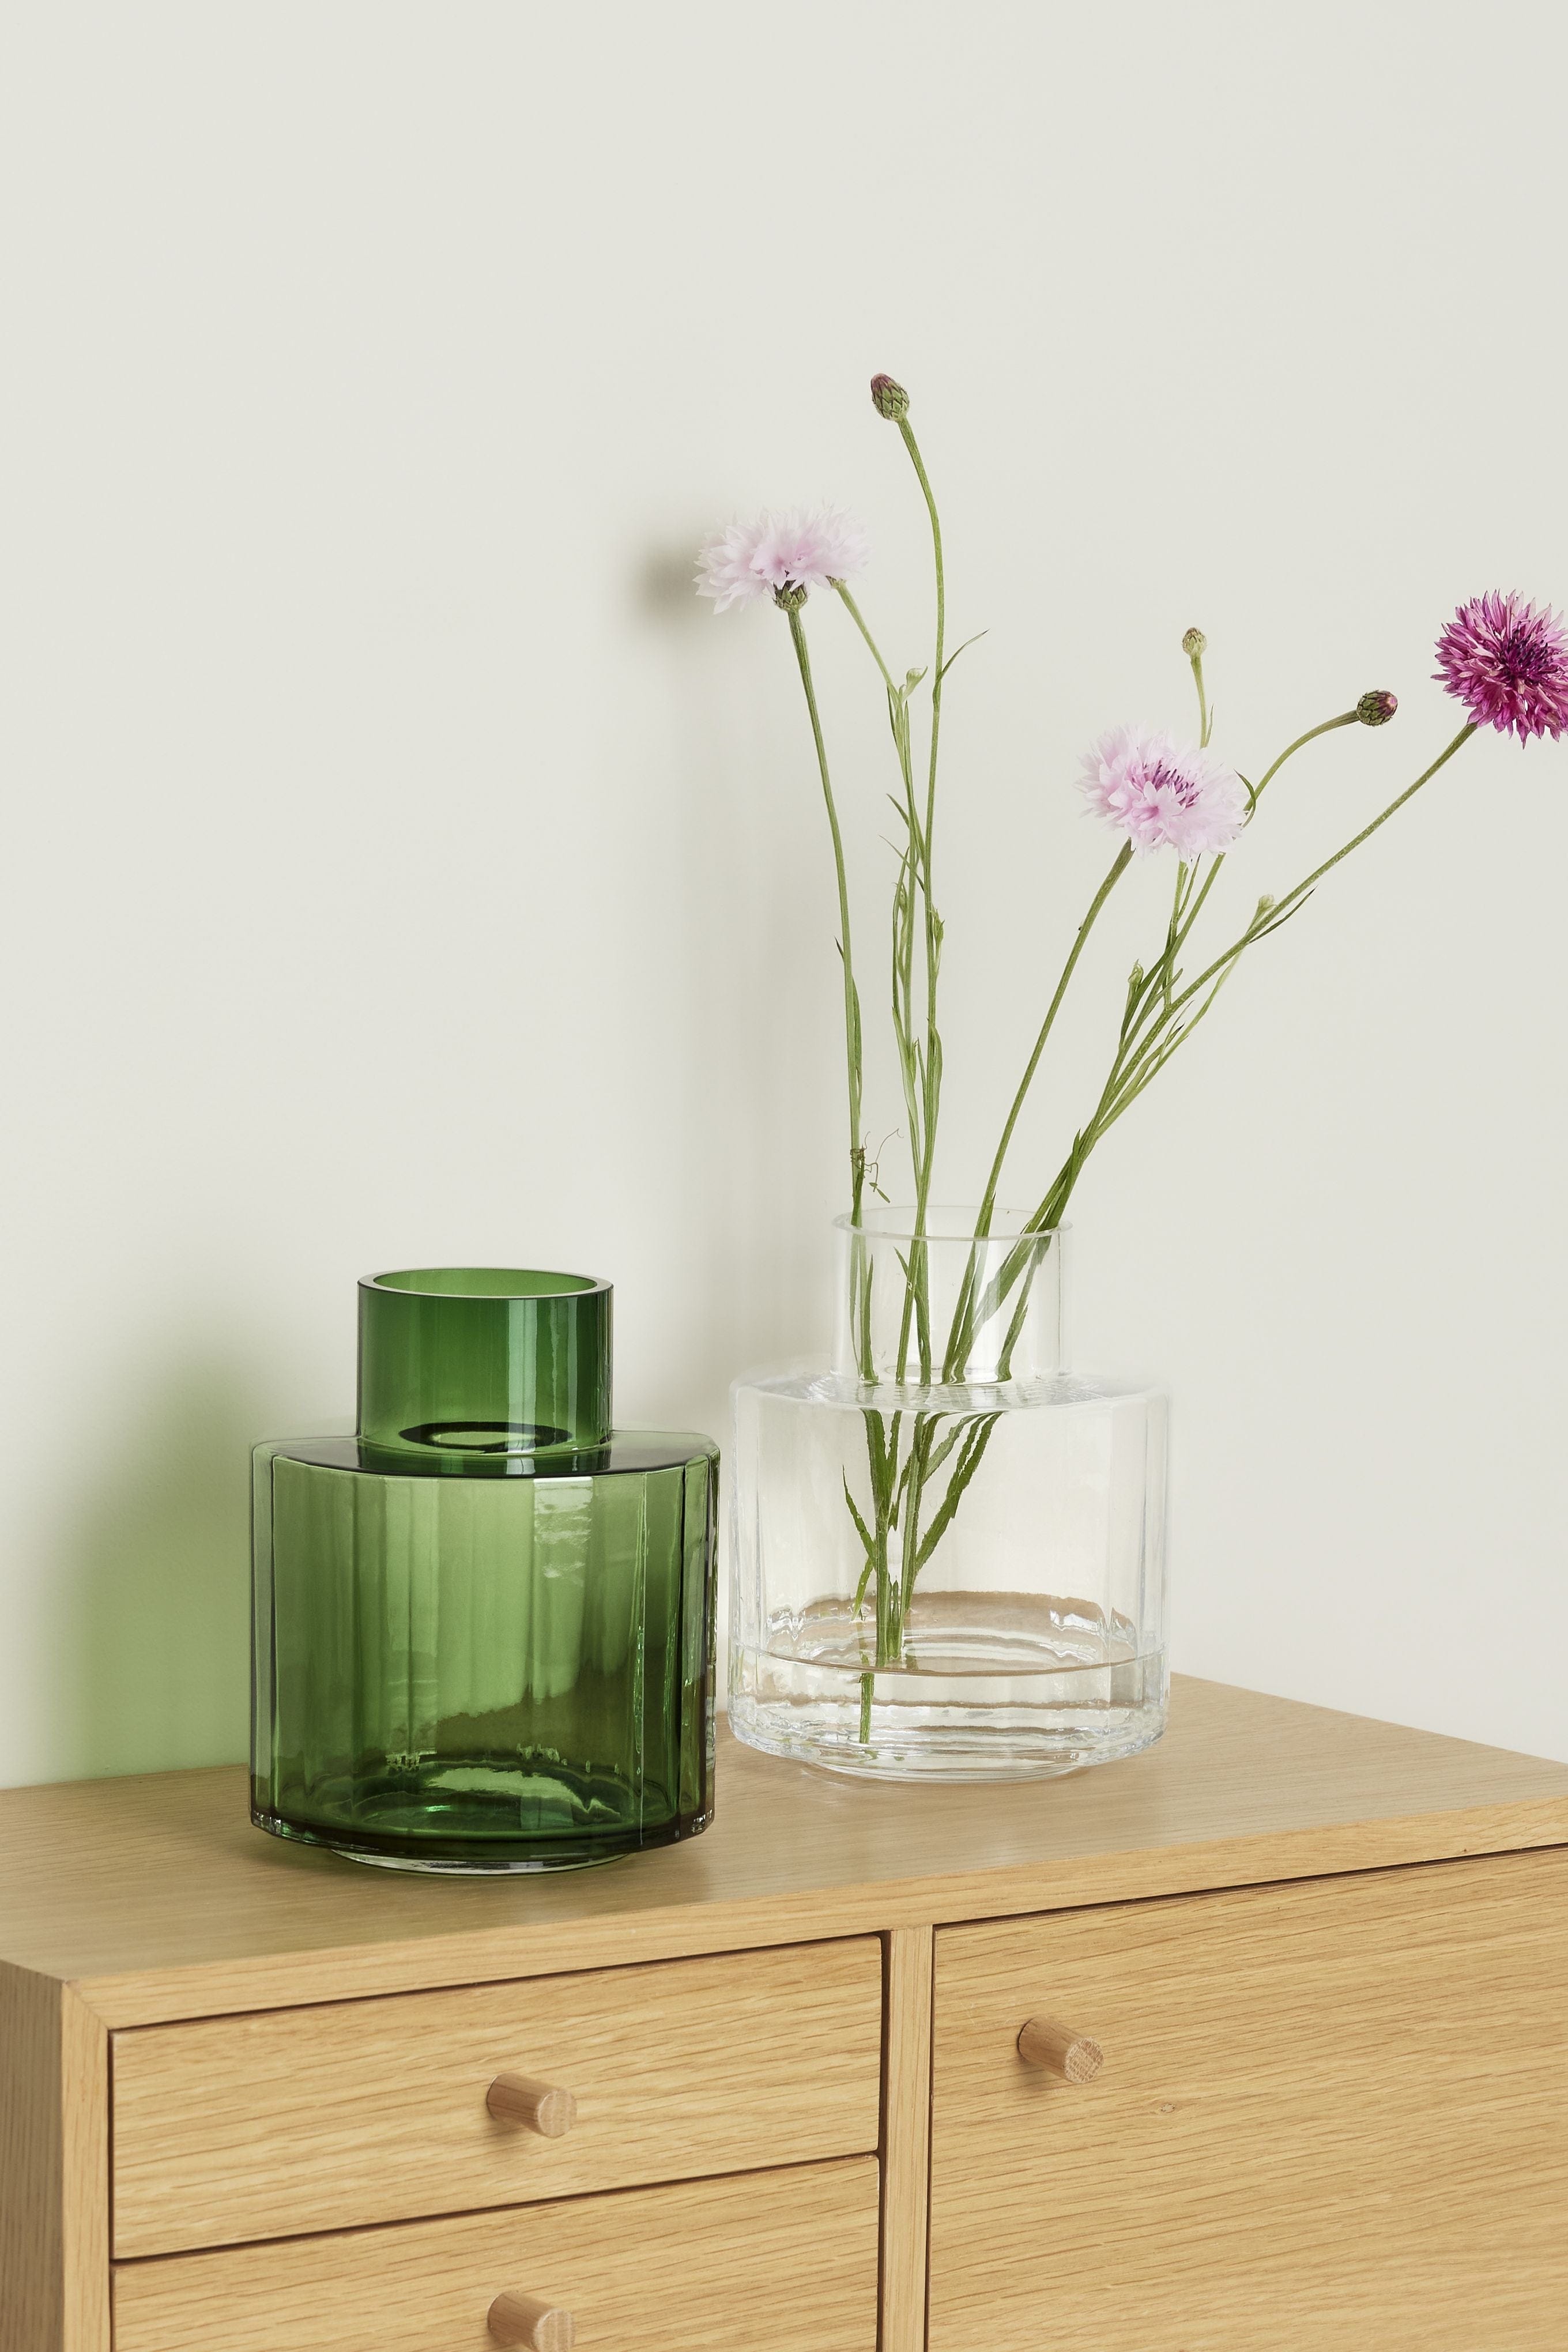 Hübsch Aster Vase Glass Green / Clear S / 2